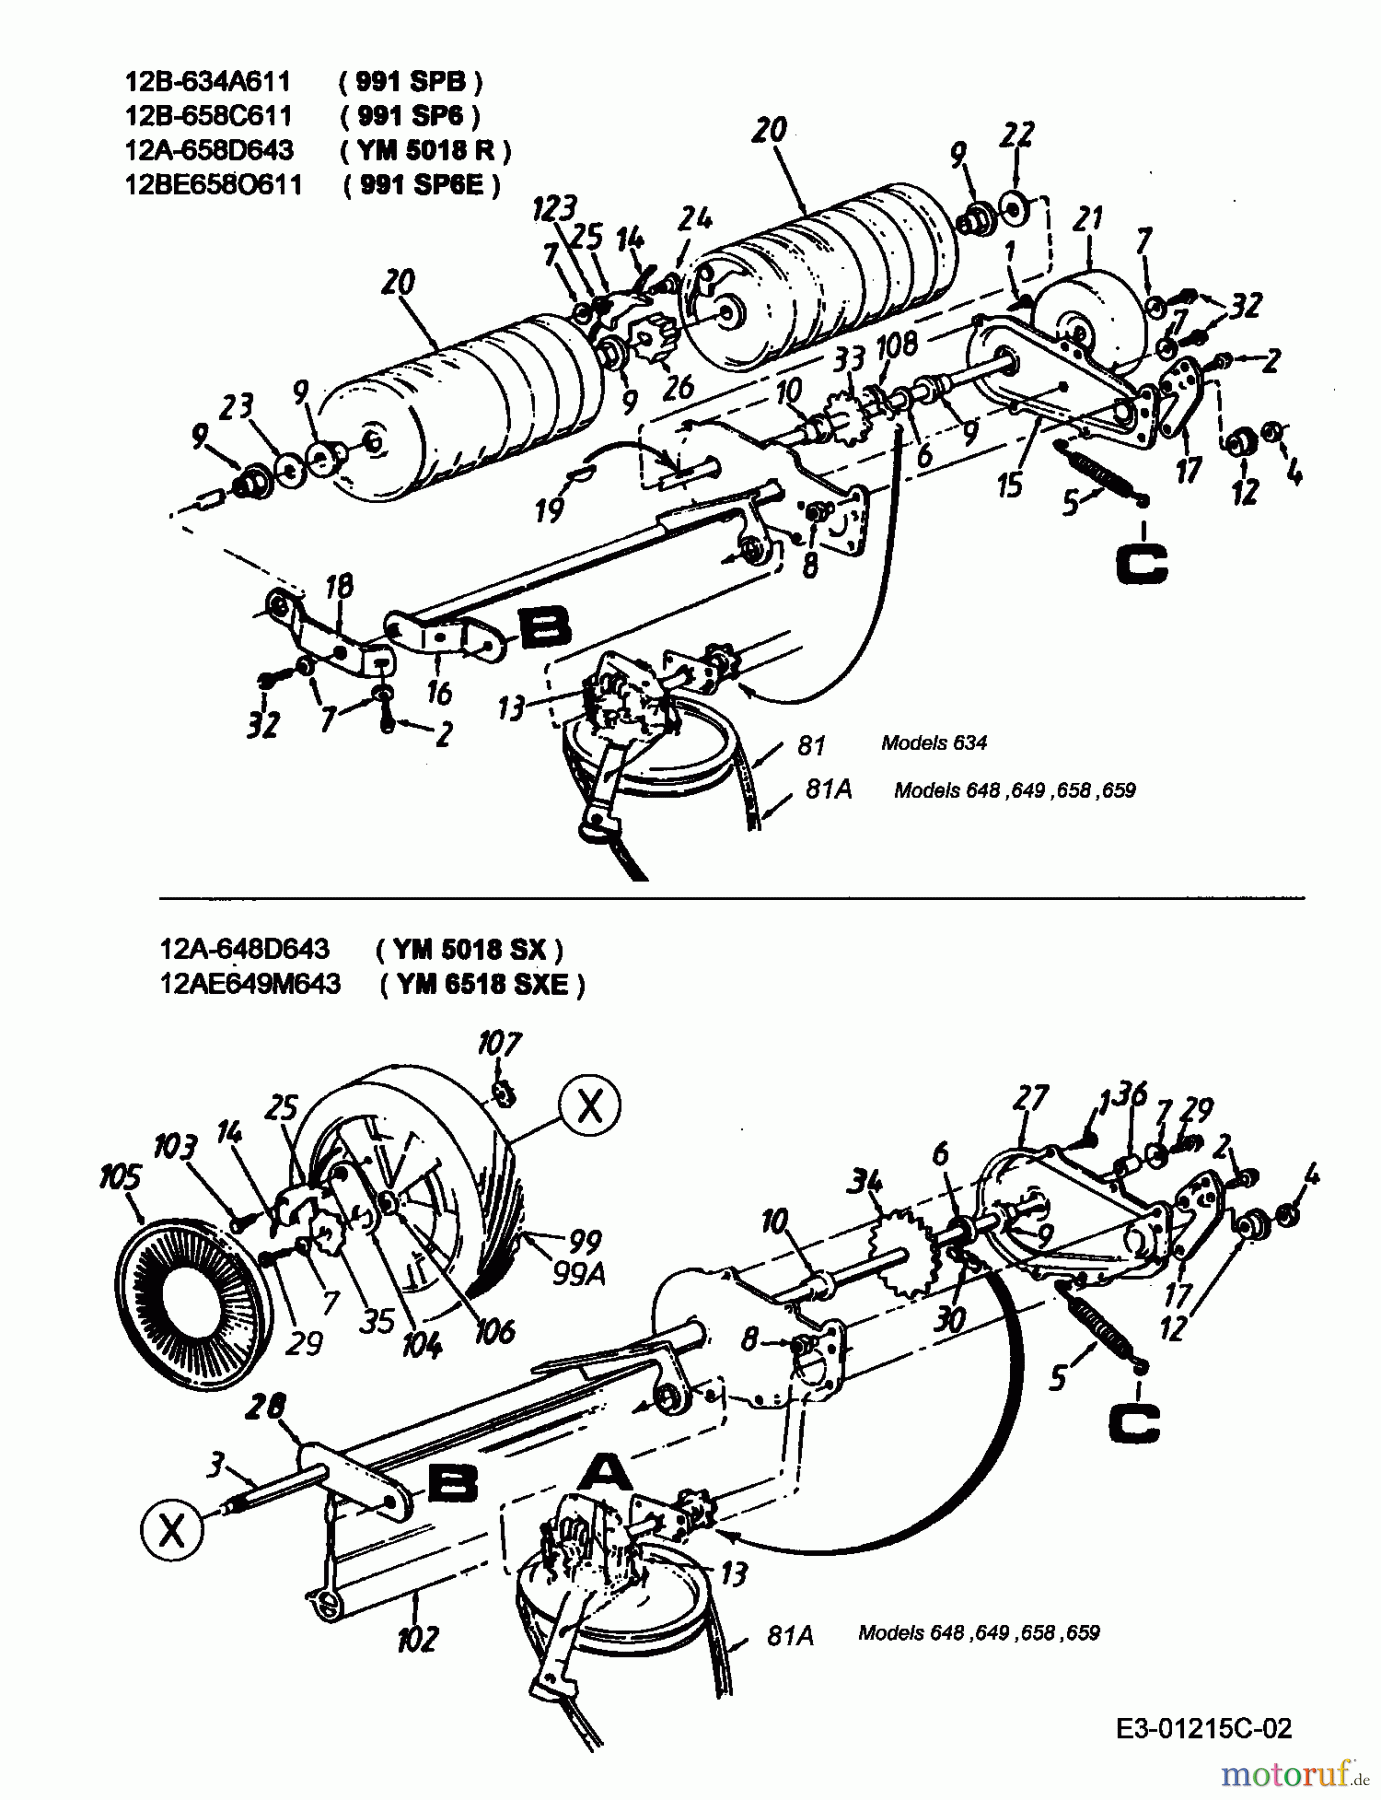  Lawnflite Motormäher mit Antrieb 991 SP 6 12B-658C611  (2000) Getriebe, Rollen, Räder